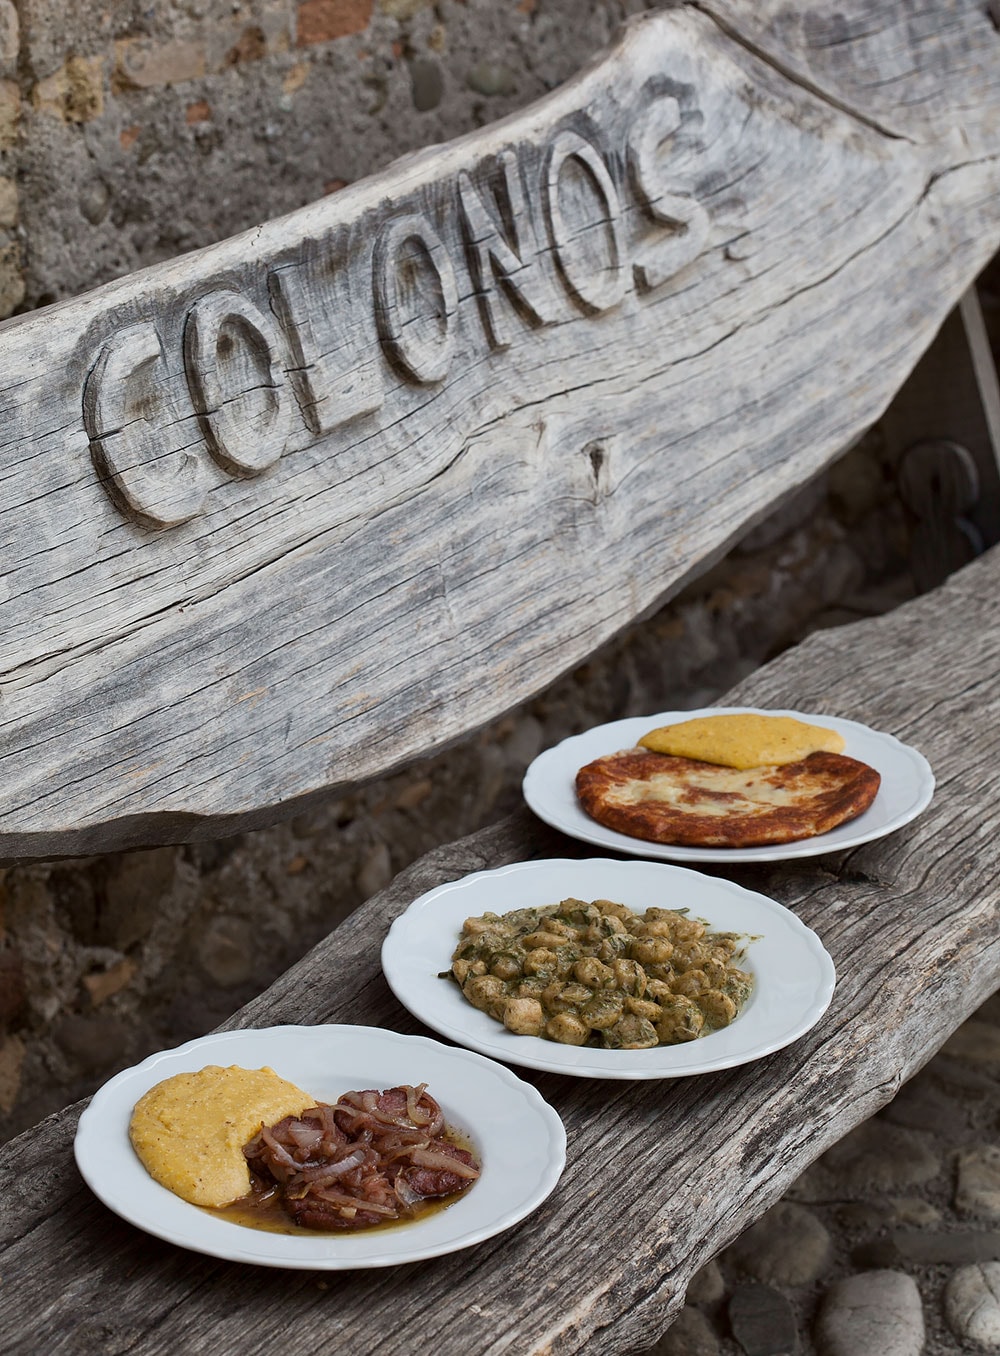 中庭のベンチで。COLONOSの店名入りなのは、アートイベントをした時にアーティストが作ってくれたから。写真手前“ヴィネガー風味のサラミ ポレンタ添え”(6.50ユーロ)は人気メニュー。